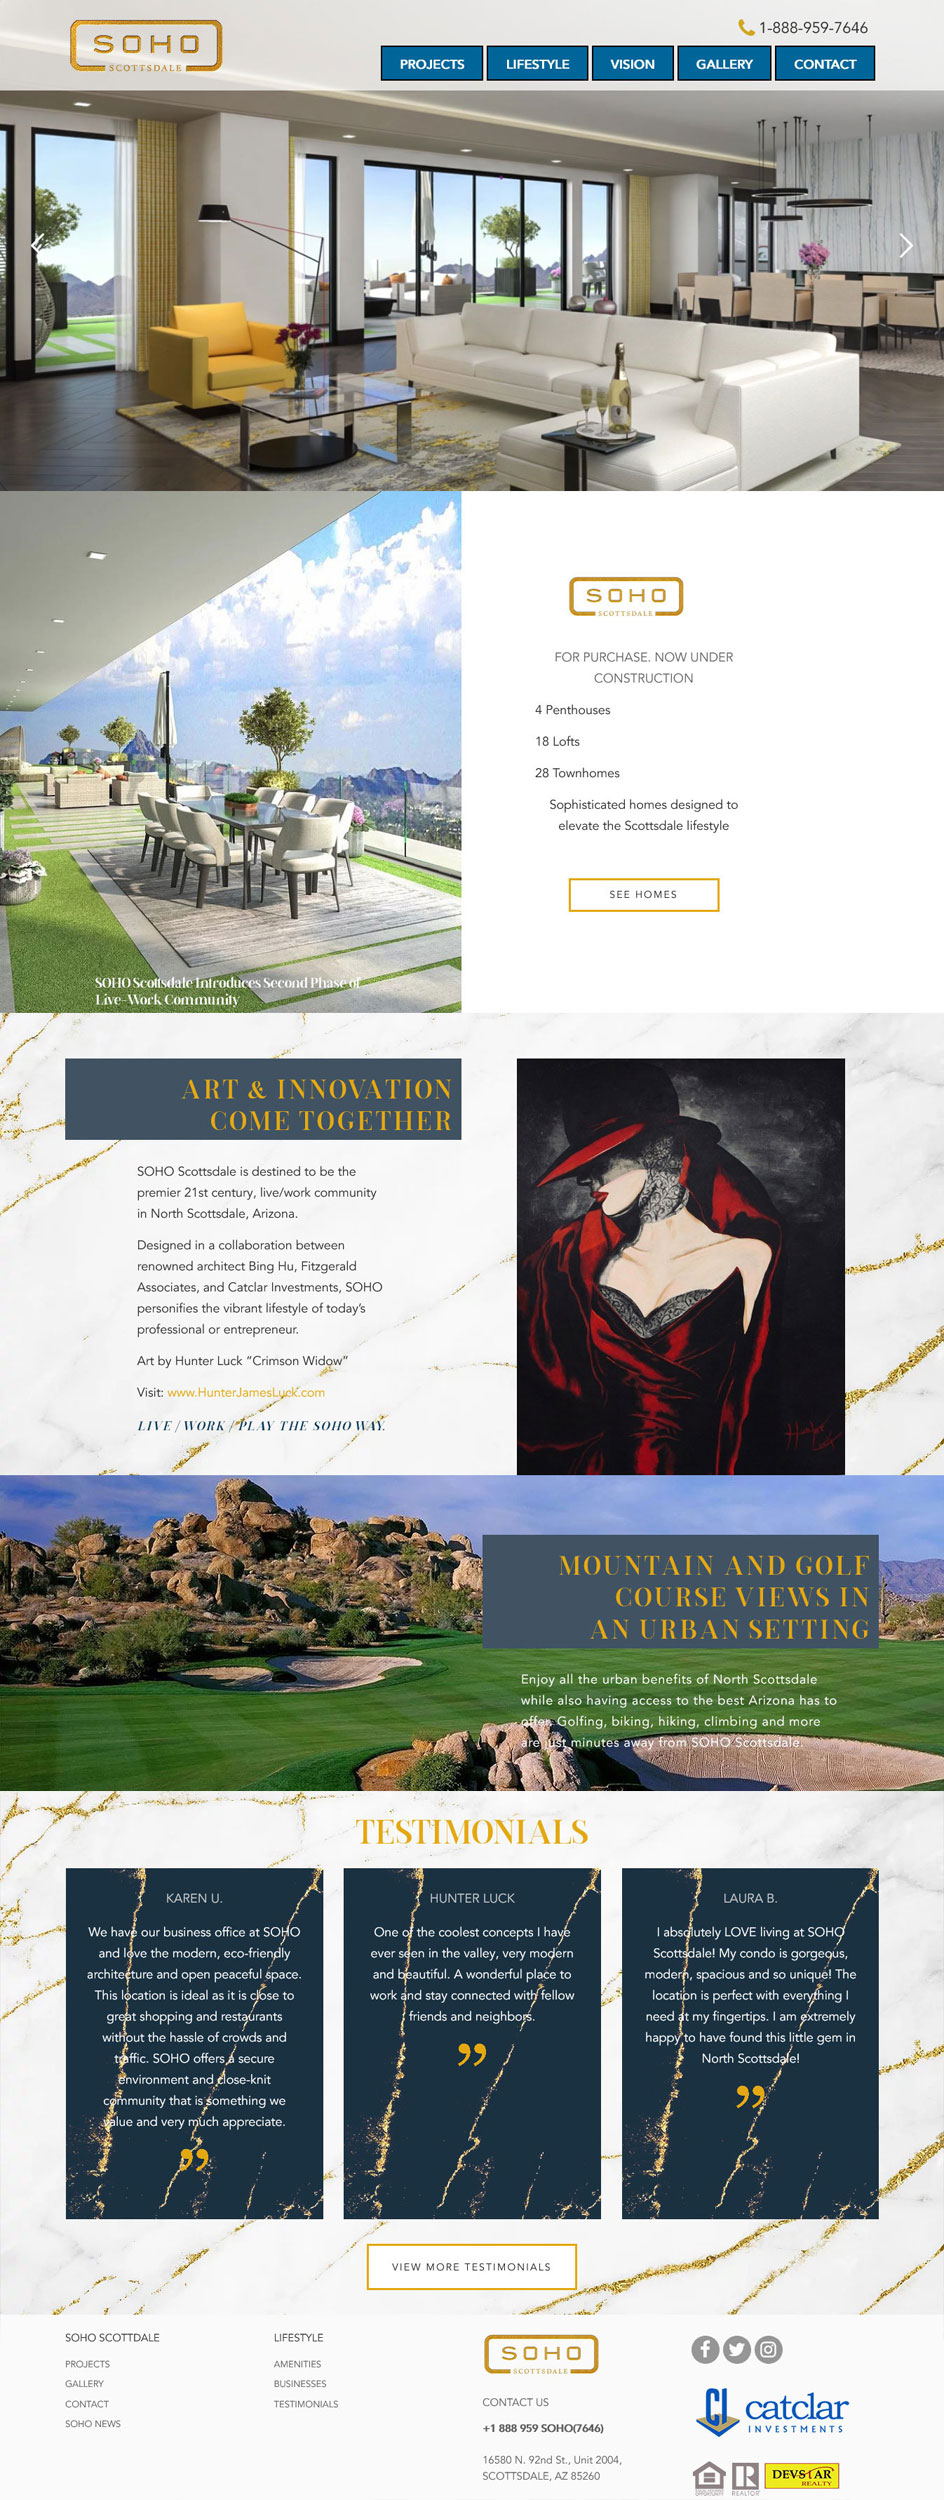 SOHO Scottsdale Website Design